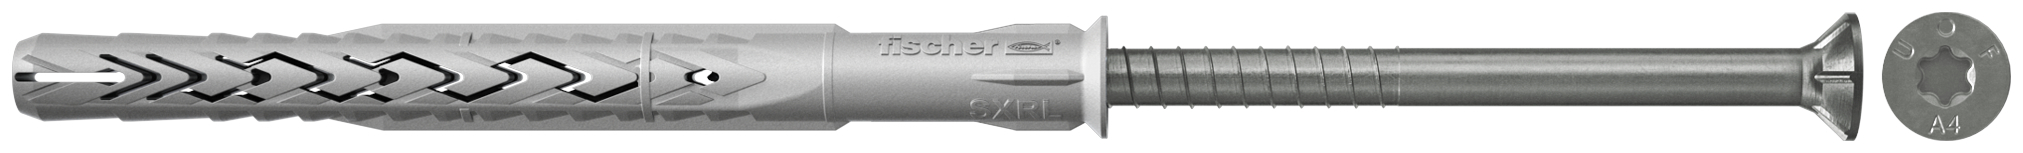 fischer Tasselli prolungati SXRL 10X260 T A4 (1 Pz.) Tassello prolungato in nylon con marcatura CE con vite premontata in acciaio inox A4, T.S.P. impronta torx.